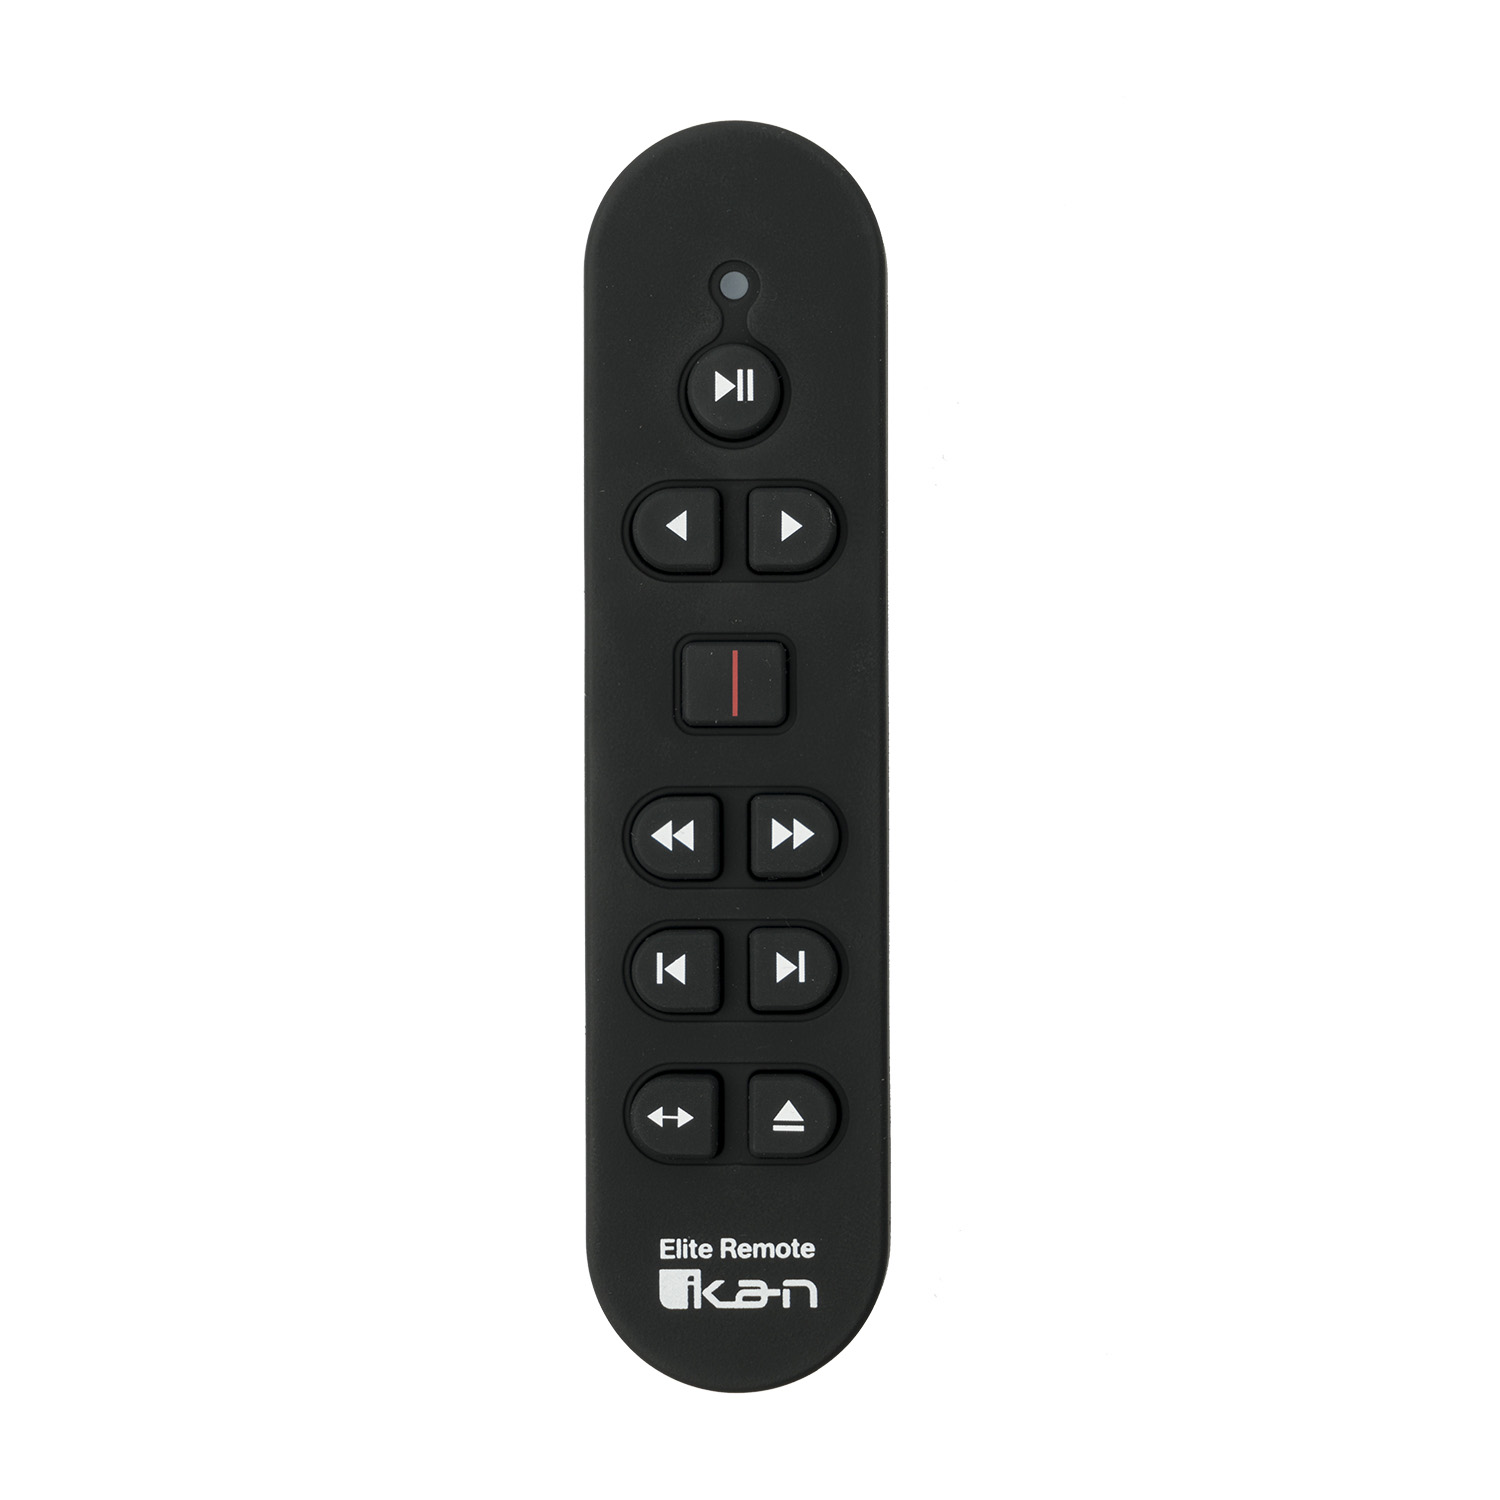 a6500 remote control for mac